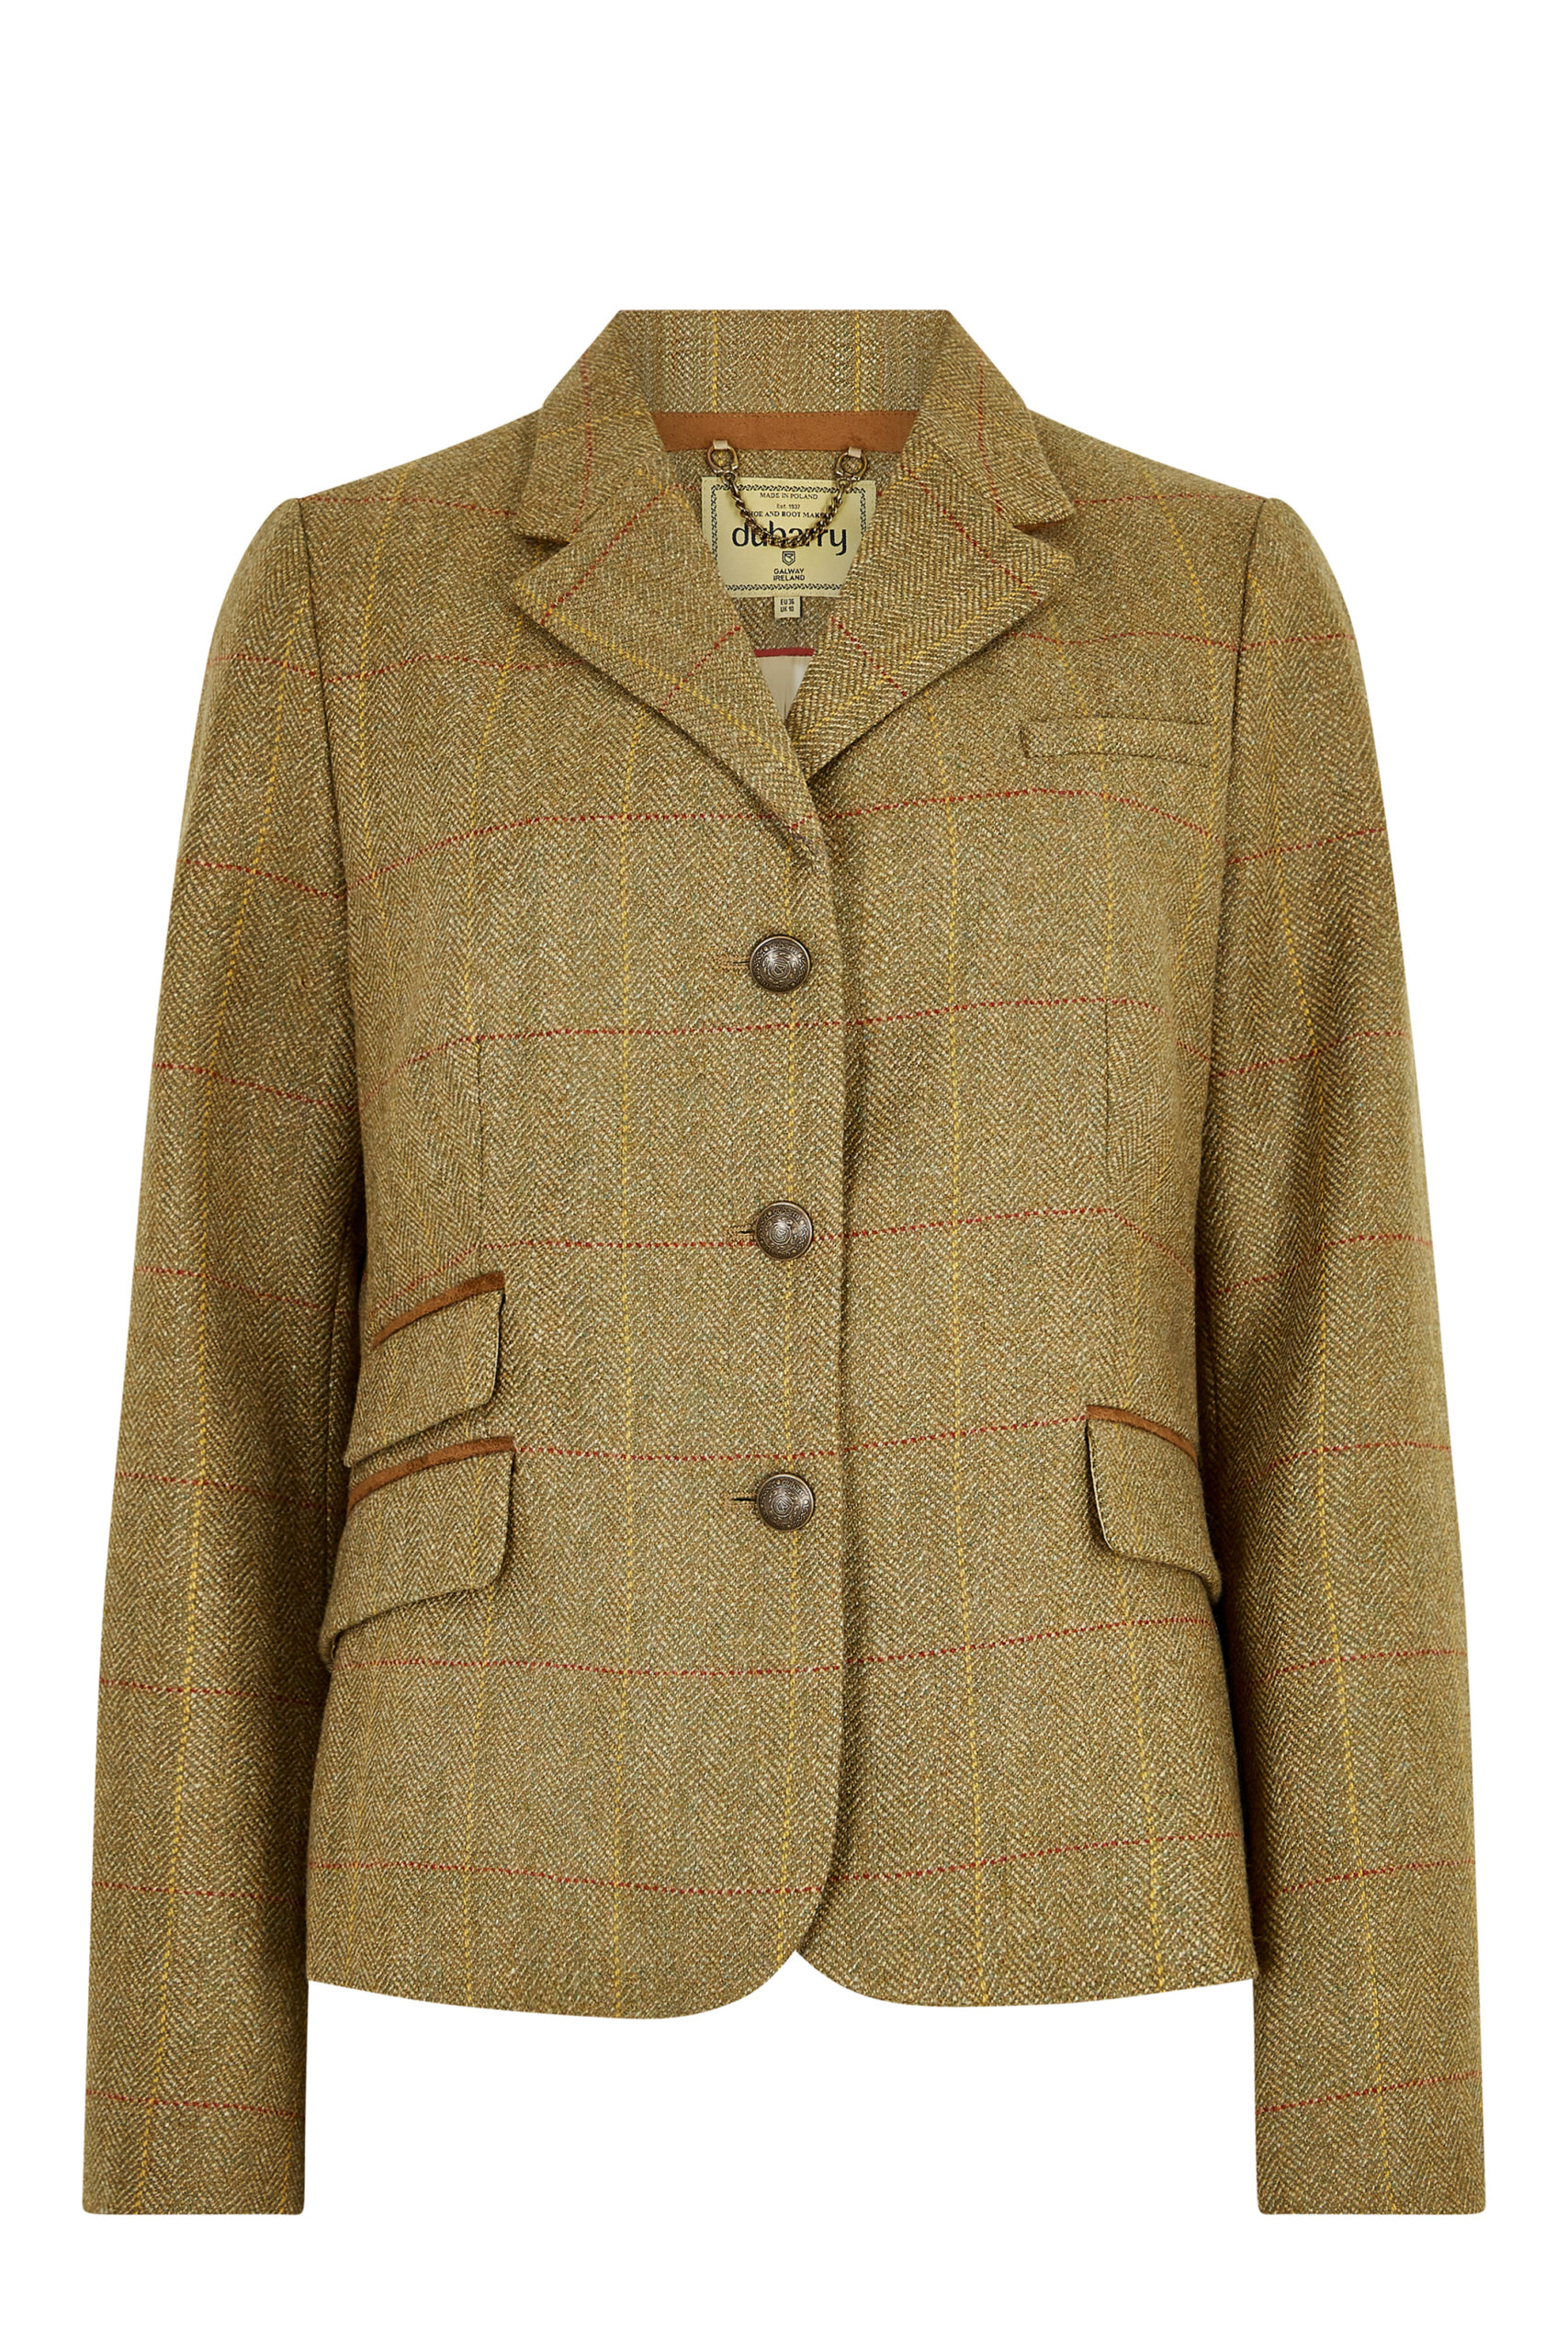 Dubarry Buttercup Women’s Tweed Jacket – Welsh Farmhouse Company